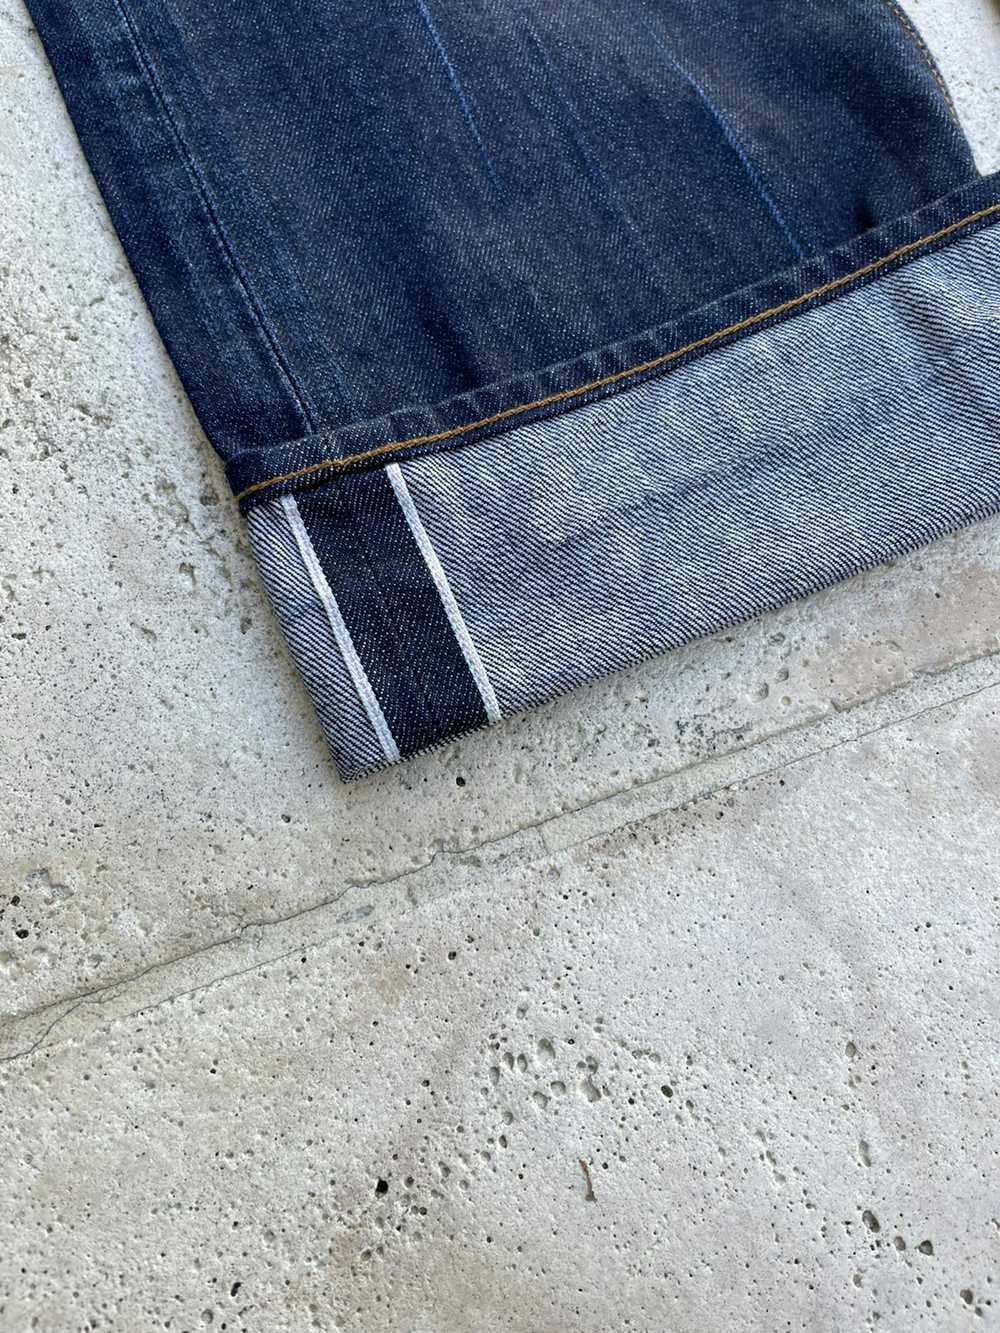 Prps 34x34 PRPS Selvedge Japanese Denim Jeans Bar… - image 3